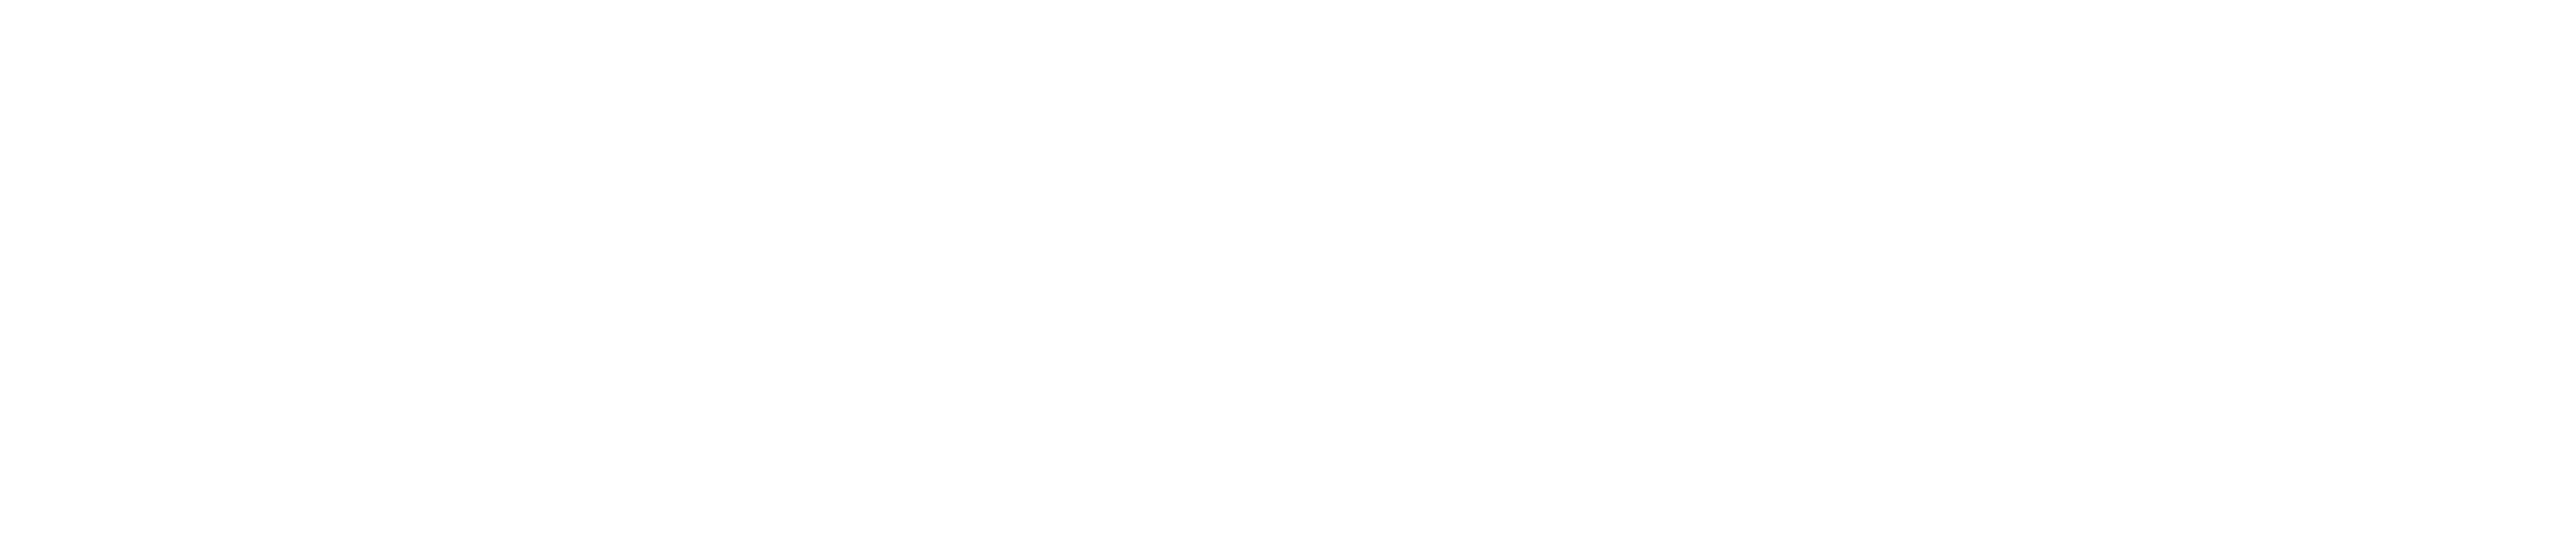 Closerstill Media logo